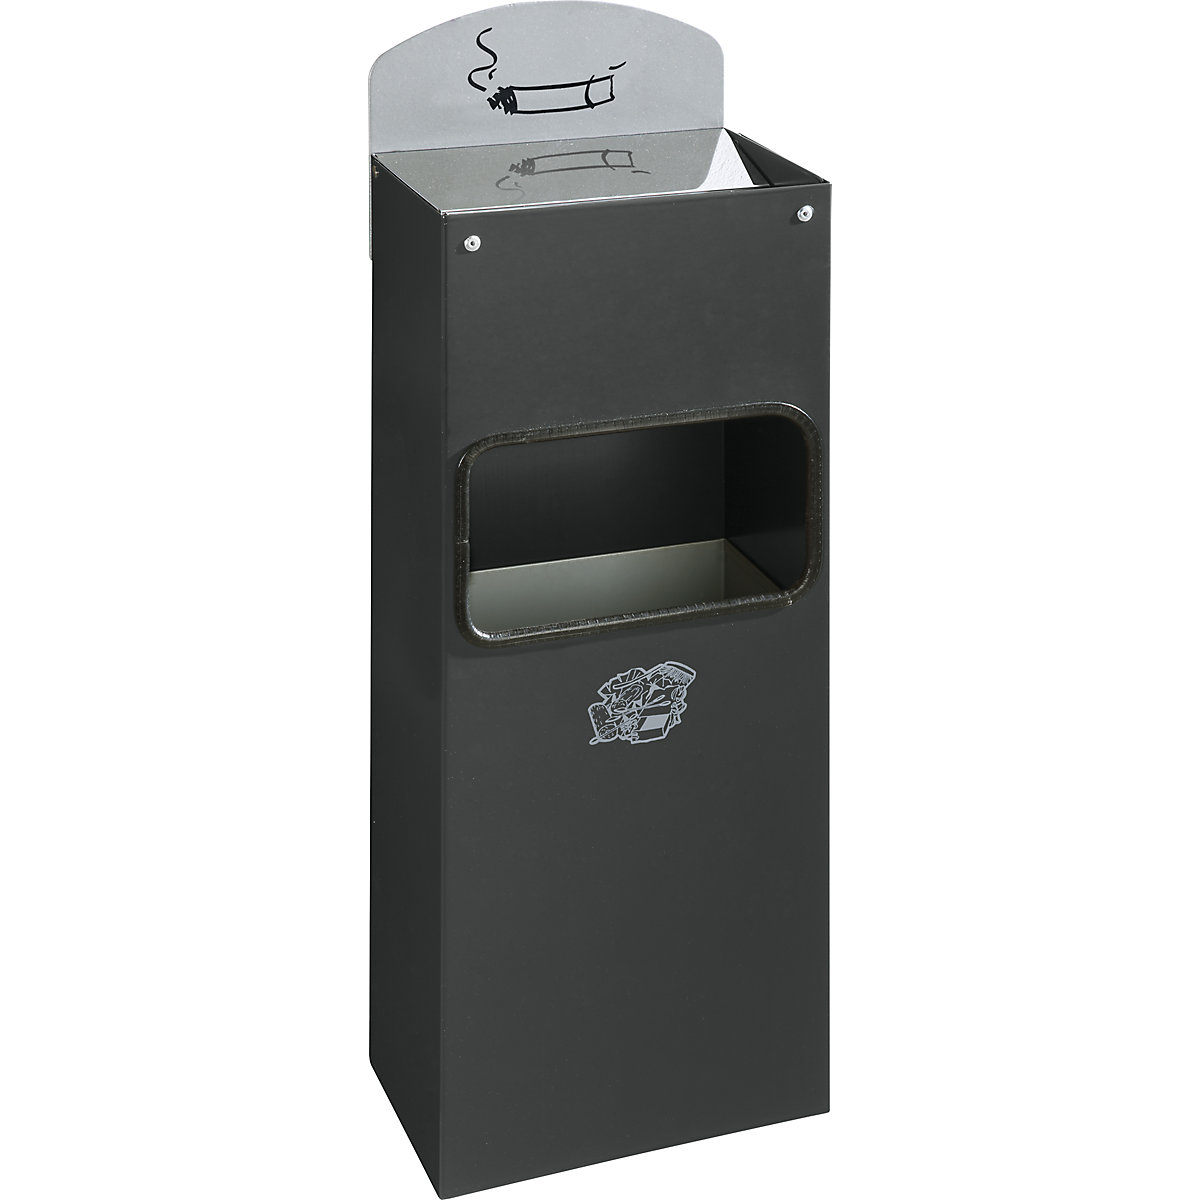 VAR – Kombinovaný nástěnný popelník s vhazovacím otvorem pro odpadky